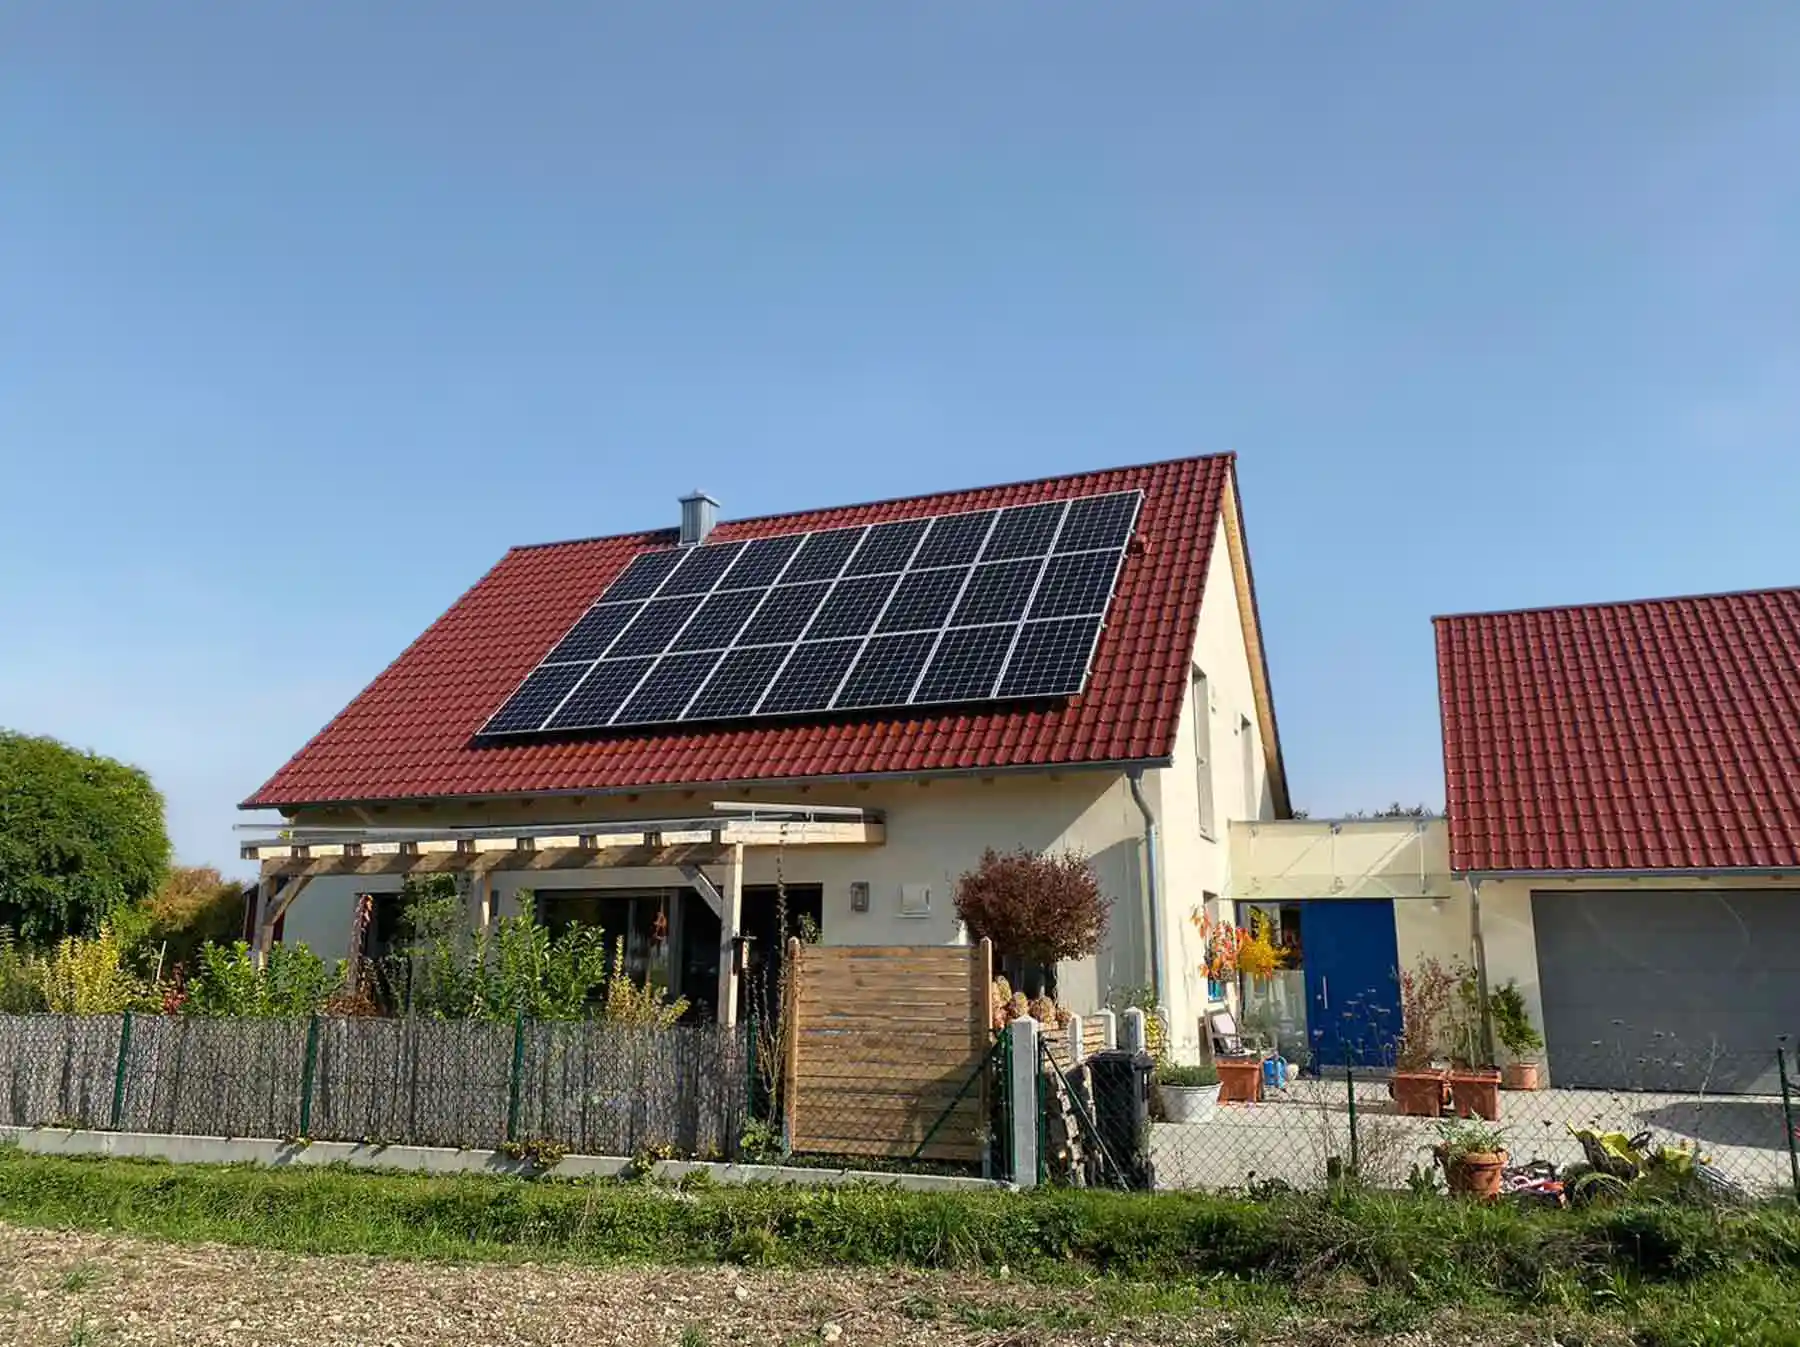 Haus von Ester Karl in Ingolstadt: Die Photovoltaikanlage auf dem Holz-Lehmhaus erzeugt einen Großteil des Stroms, den die vierköpfige Familie braucht